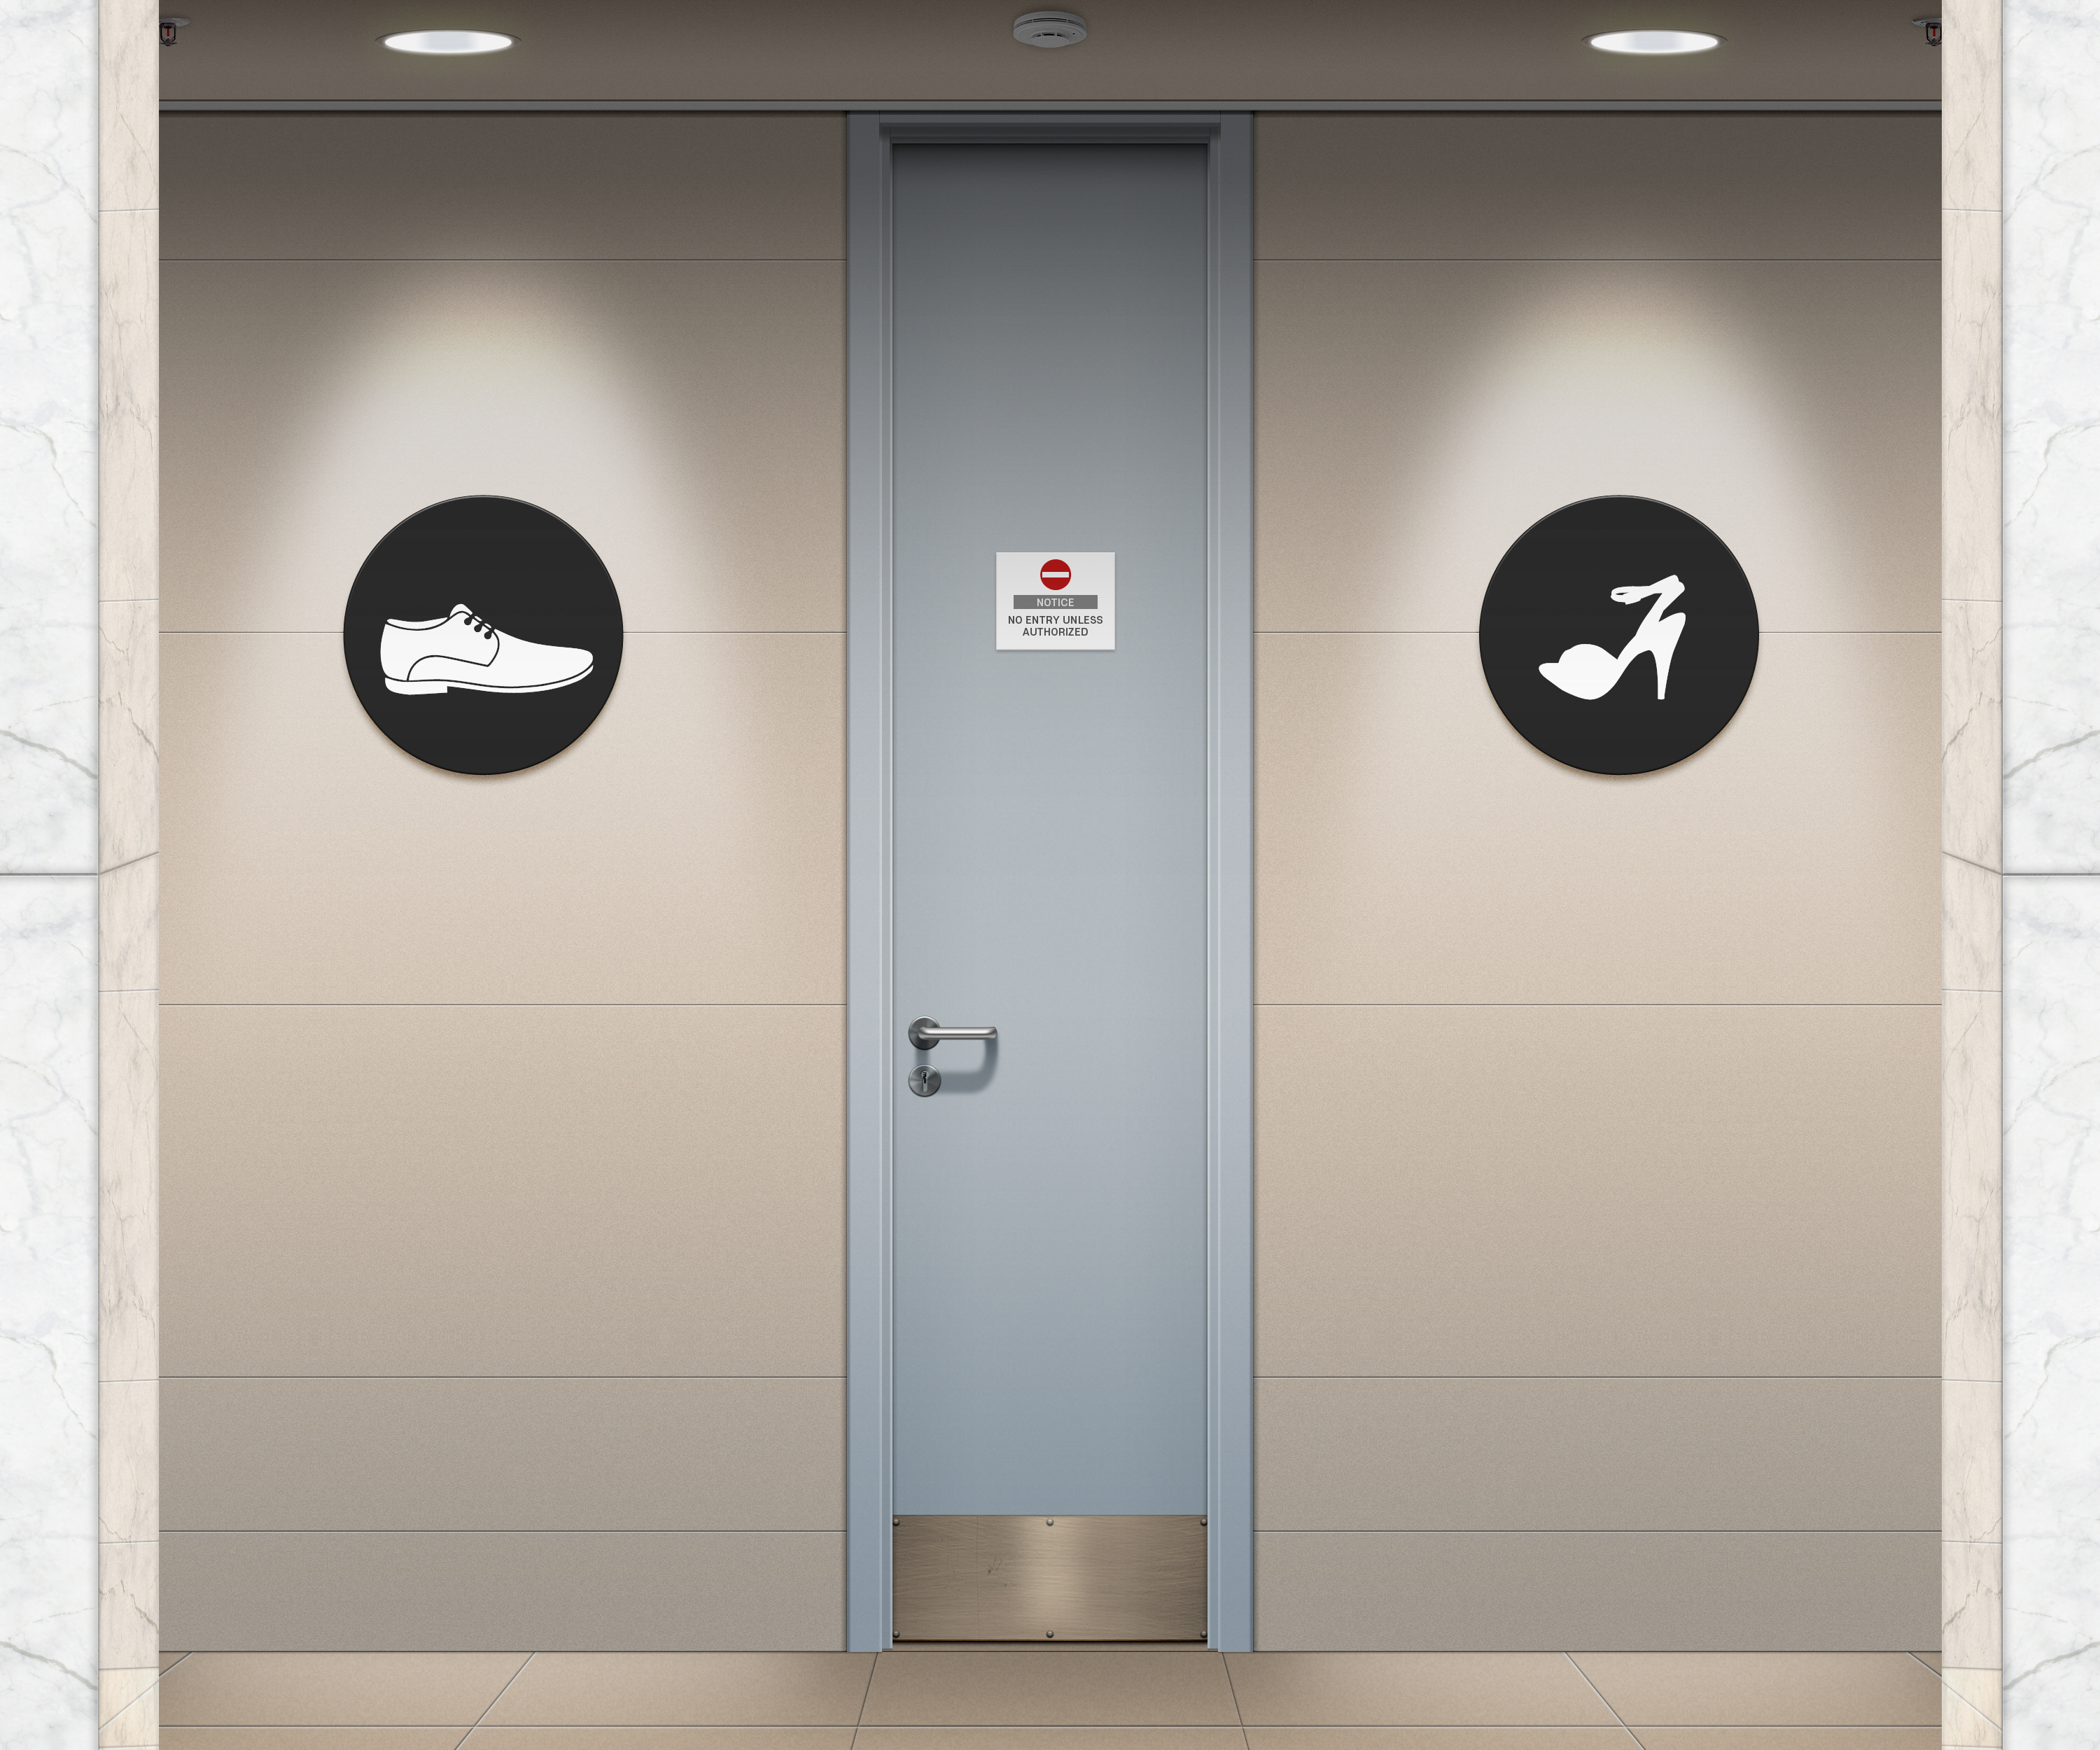 General 3000x2500 toilets public restroom sign digital art vector CGI